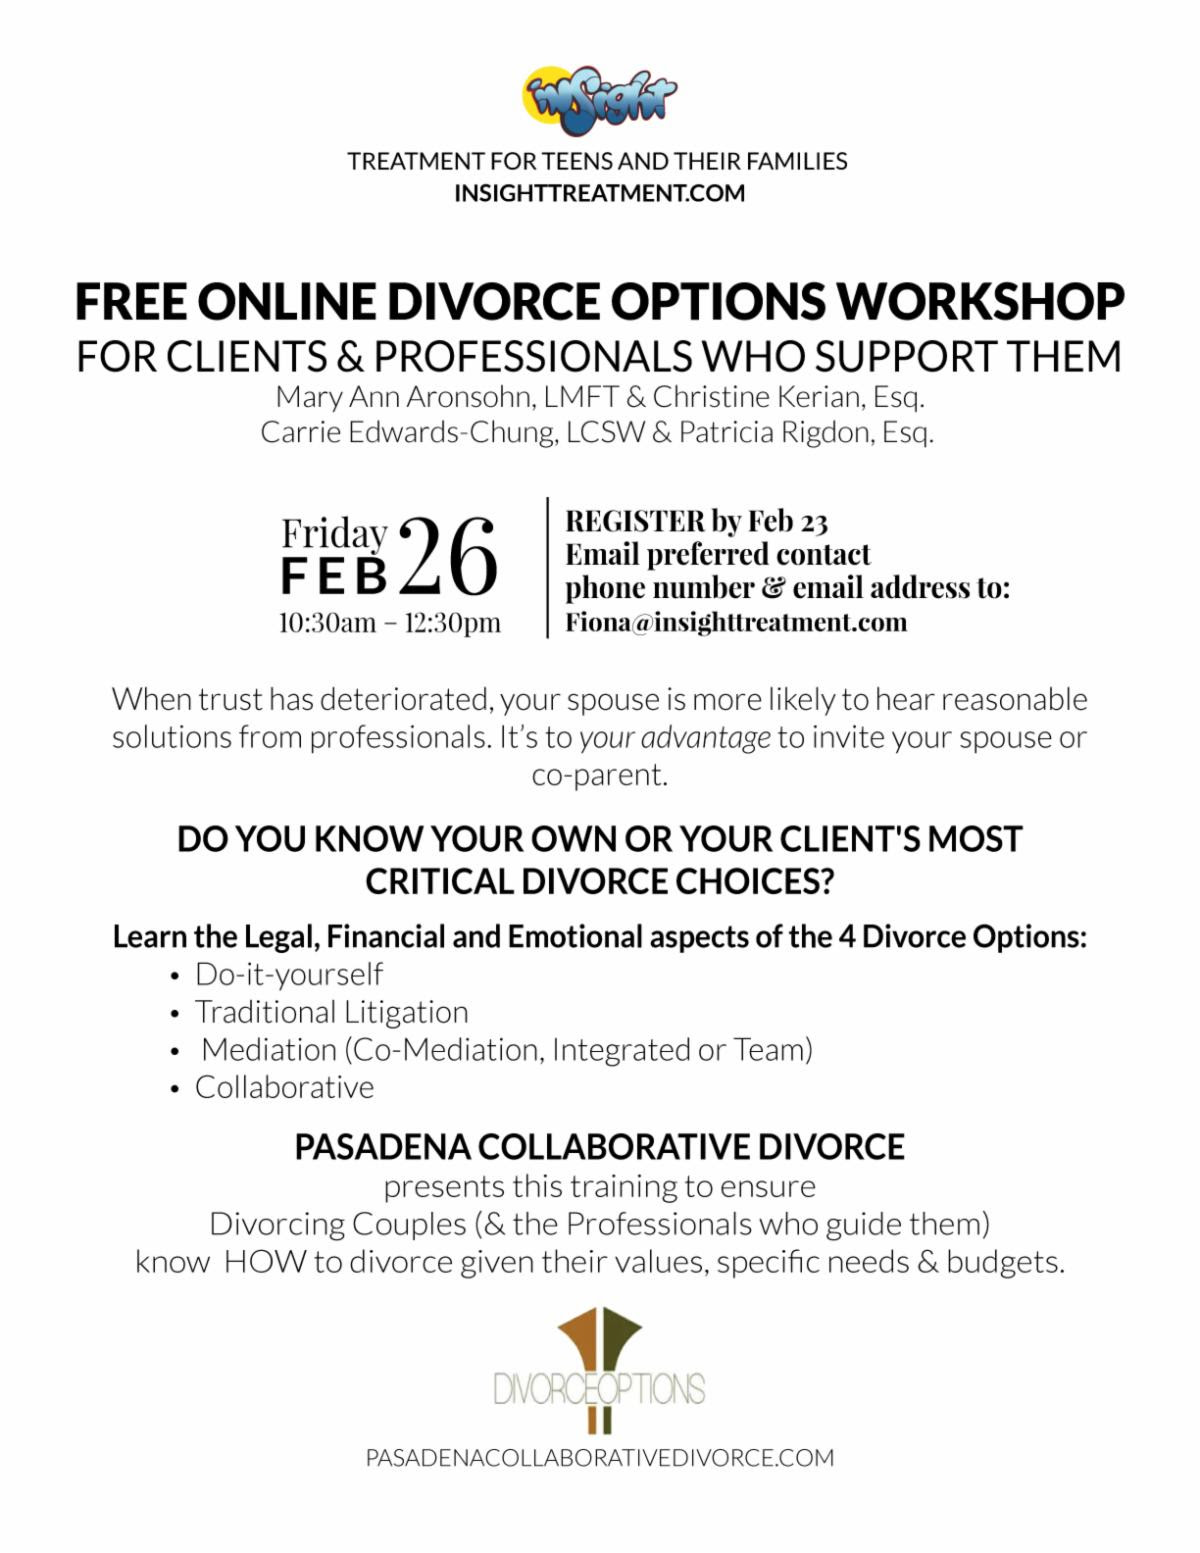 Online Divorce Options WorkShop